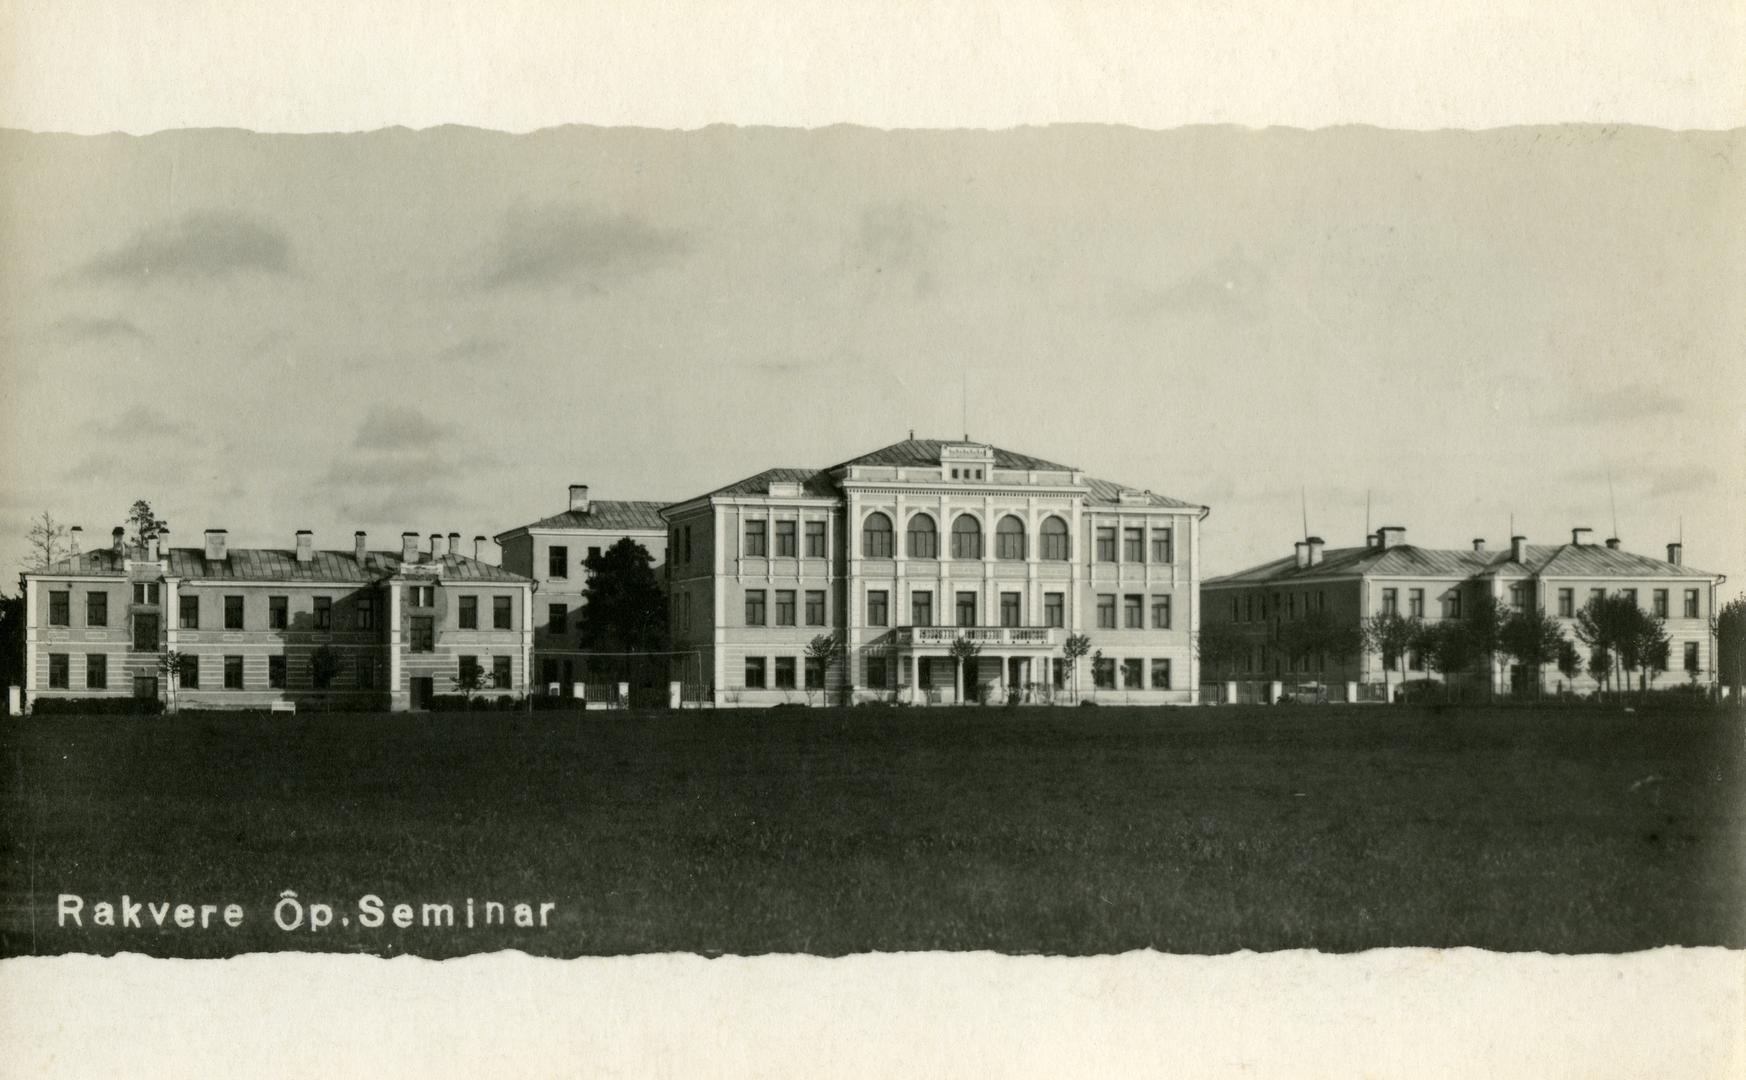 Rakvere Teachers Seminar buildings 1932